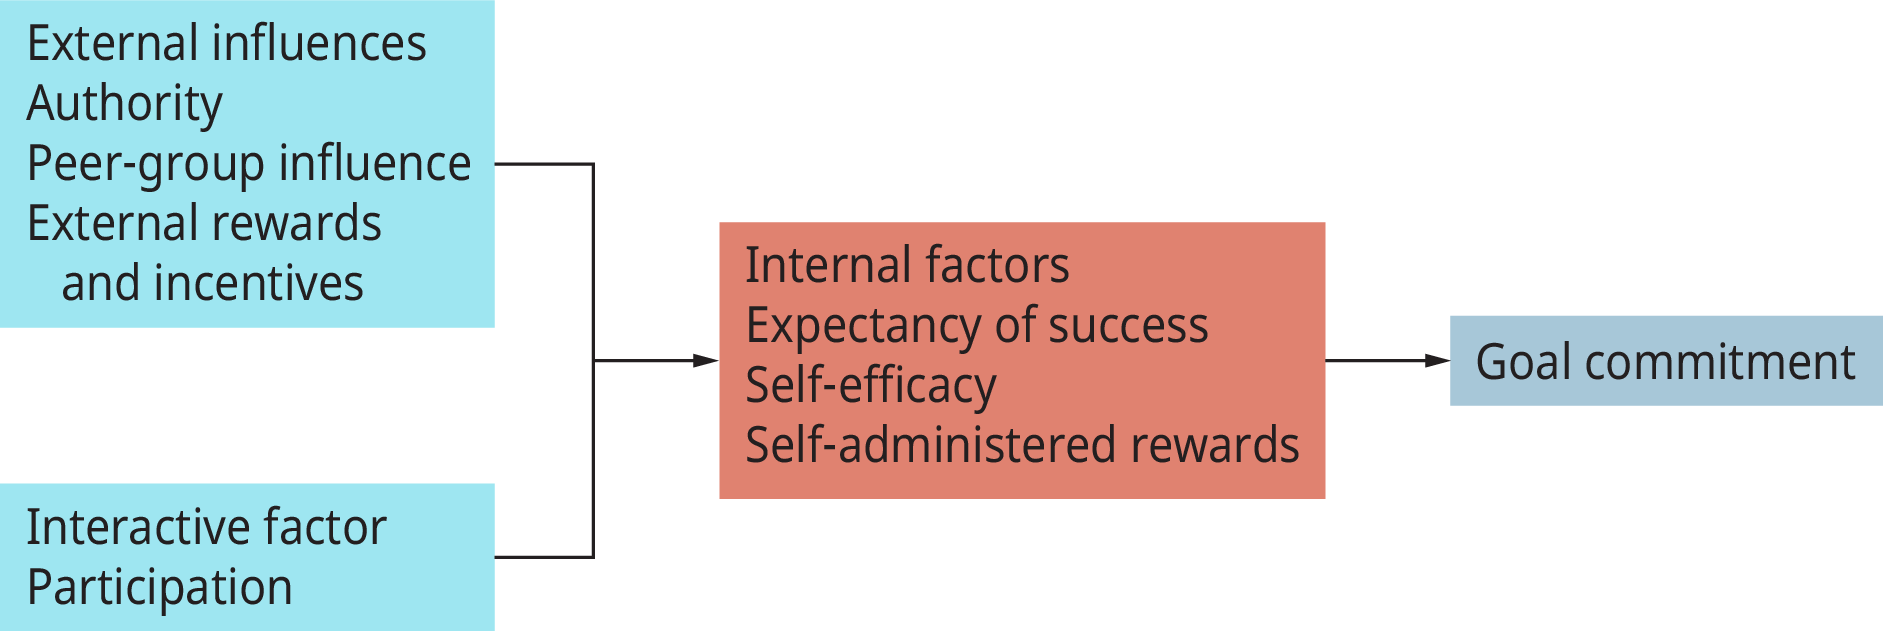 流程图显示了促进目标承诺的三组因素。